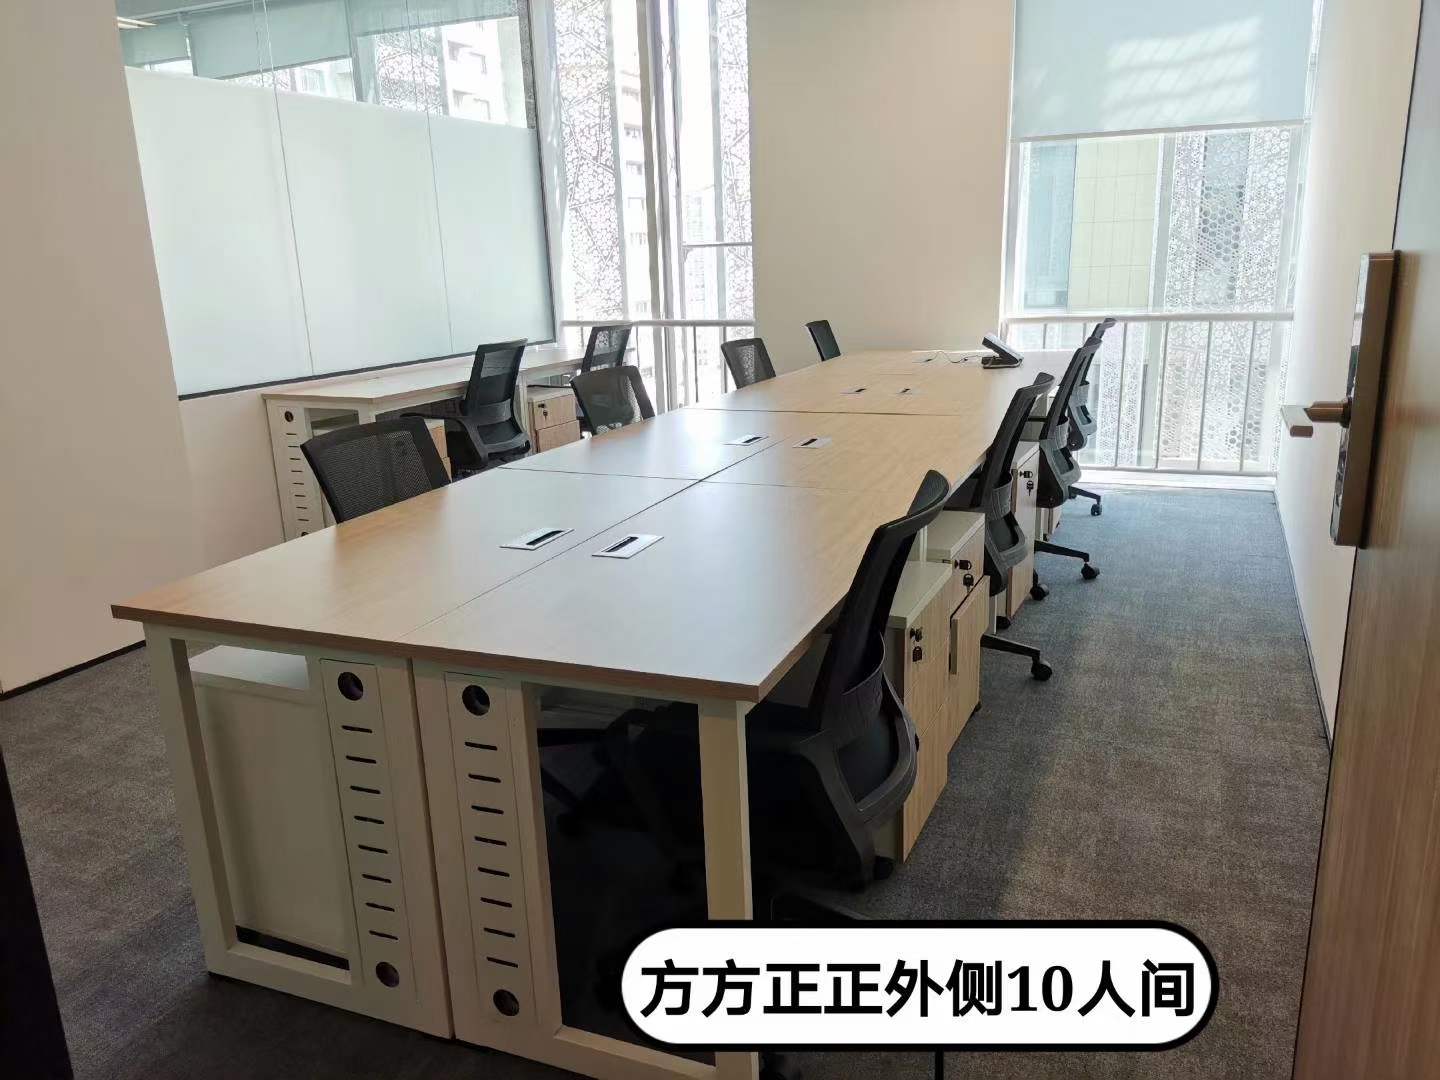 9号线合川路站的华鑫中心联合办公空间出租10人间带经理室